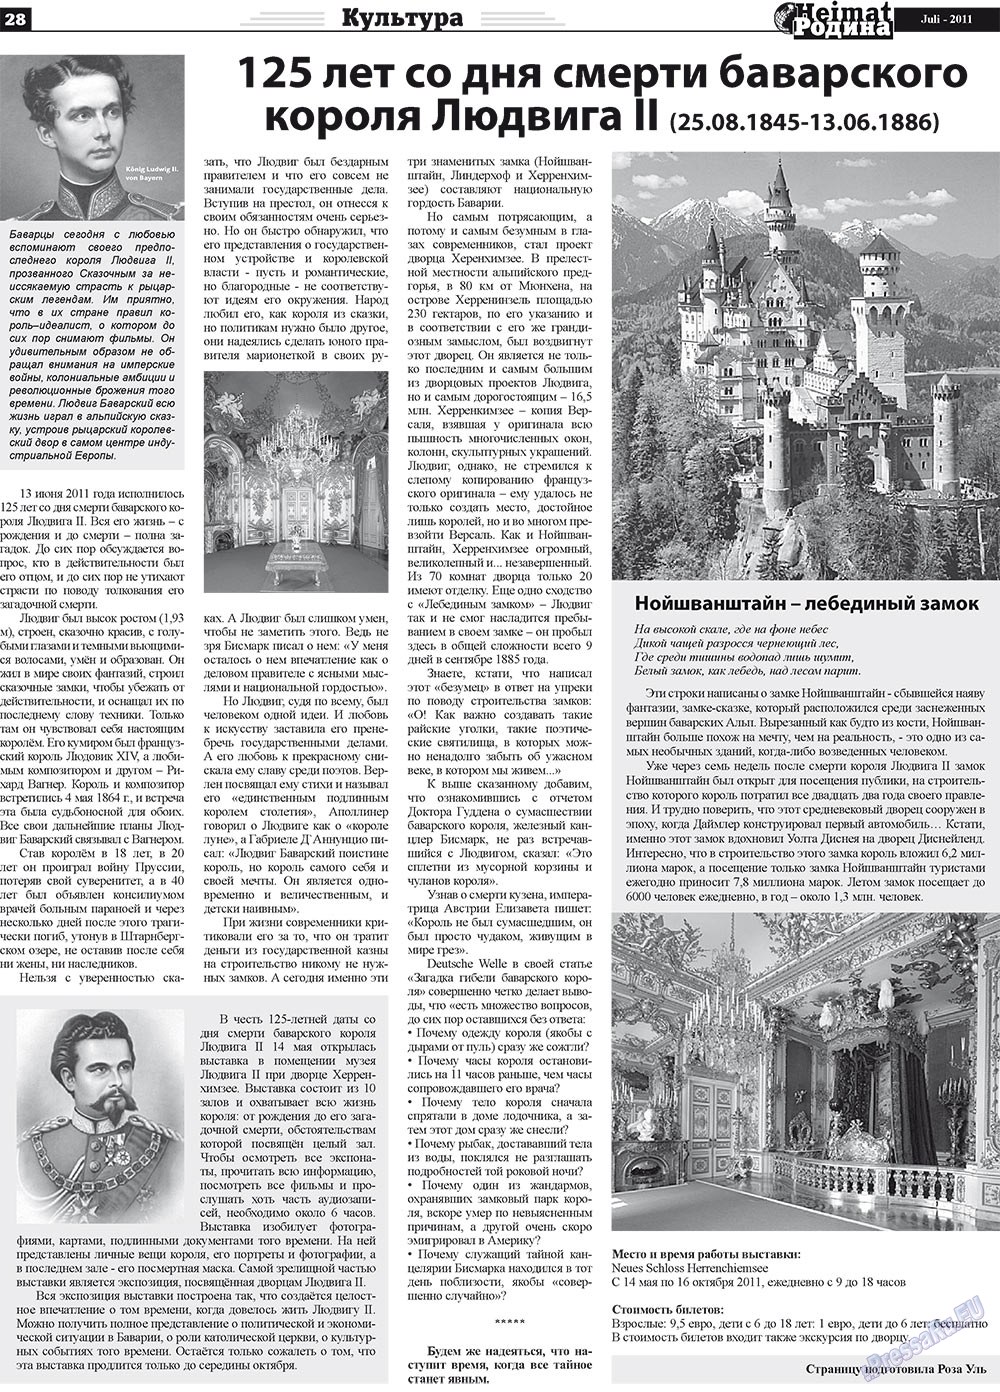 Heimat-Родина (газета). 2011 год, номер 7, стр. 28